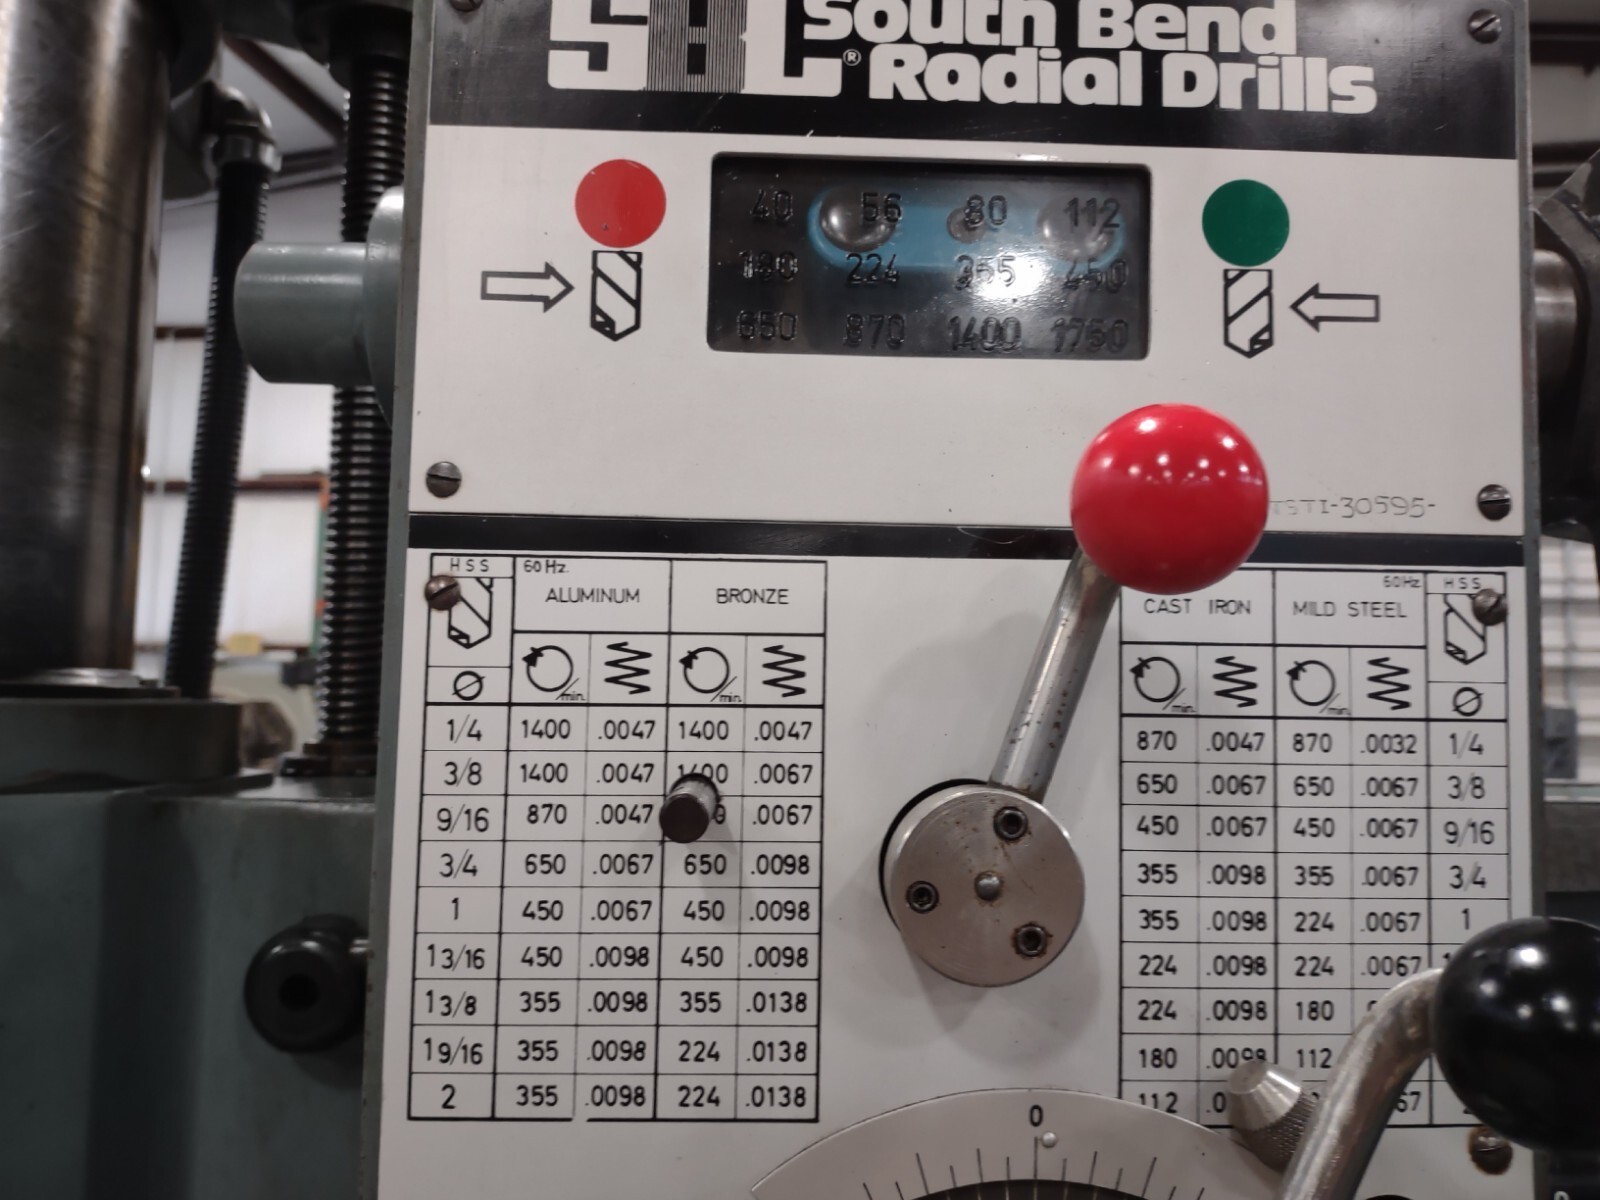 SOUTHBEND GF 50 800 Drills, Radial | N & R Machine Sales